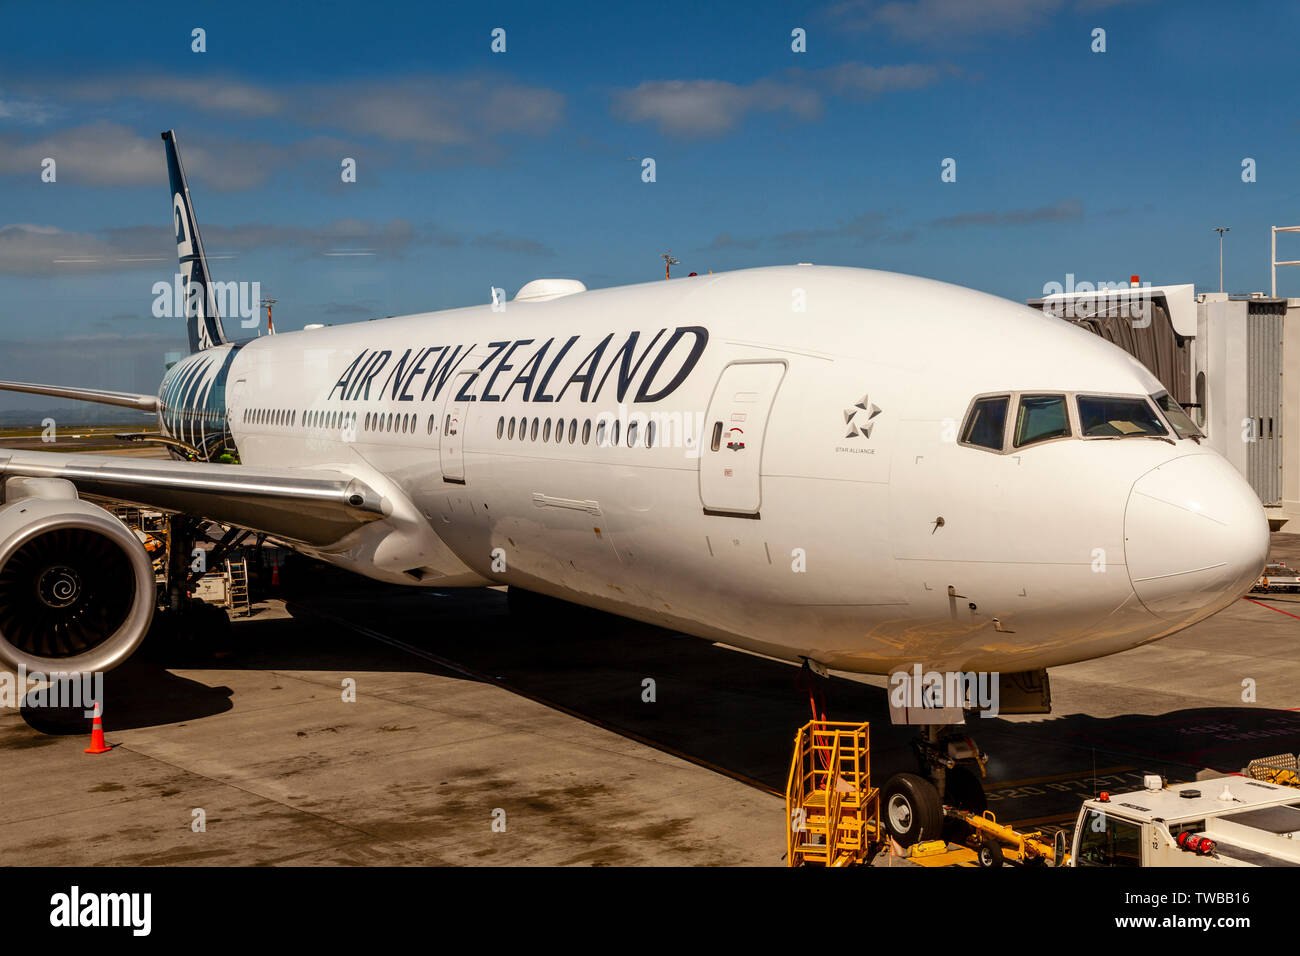 Air New Zealand Avion, l'Aéroport International d'Auckland, île du Nord, Nouvelle-Zélande Banque D'Images